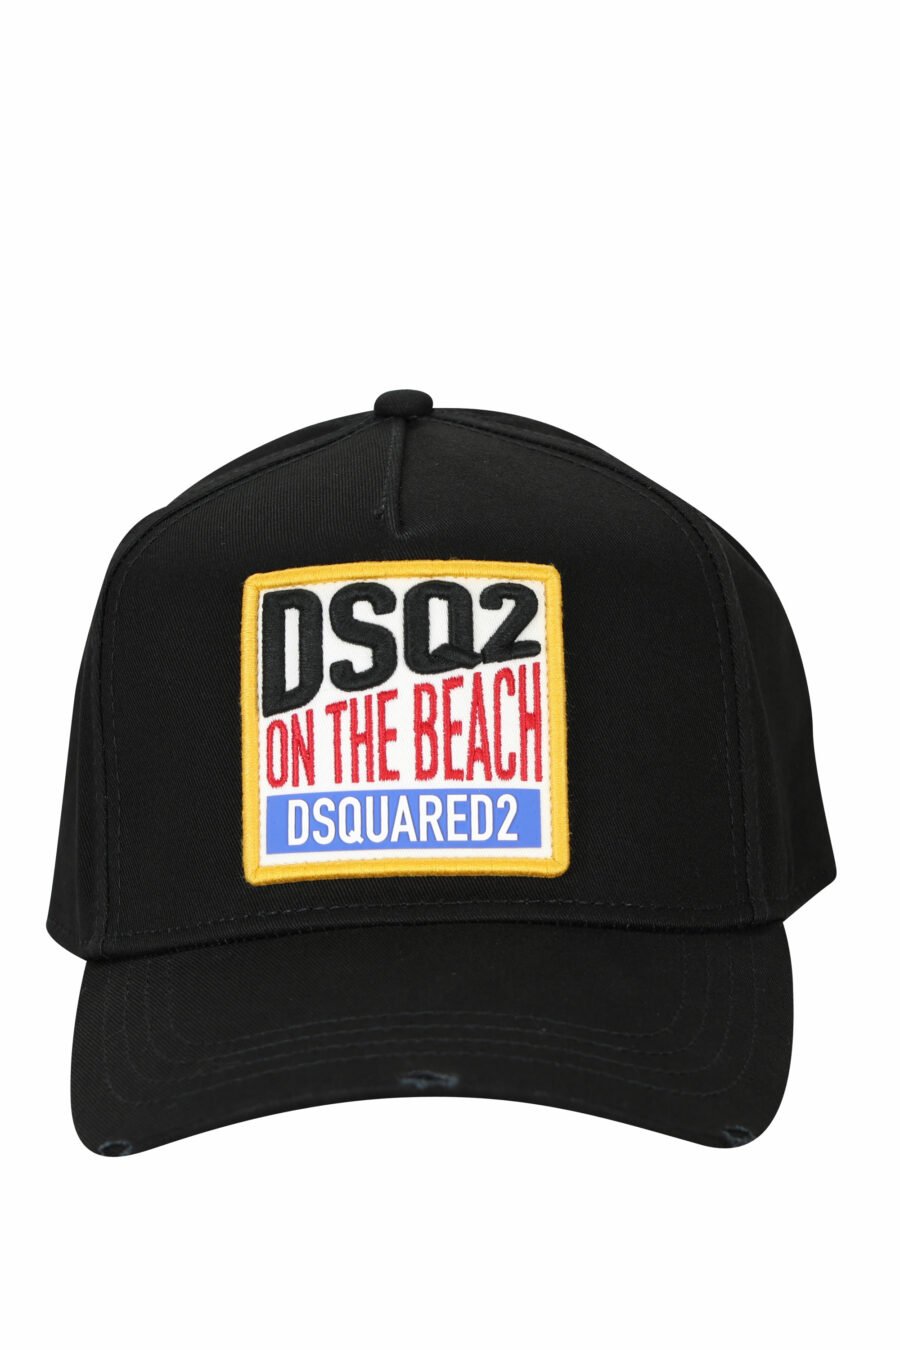 Gorra negra con recuadro "Dsq2 on the beach" - 8055777286838